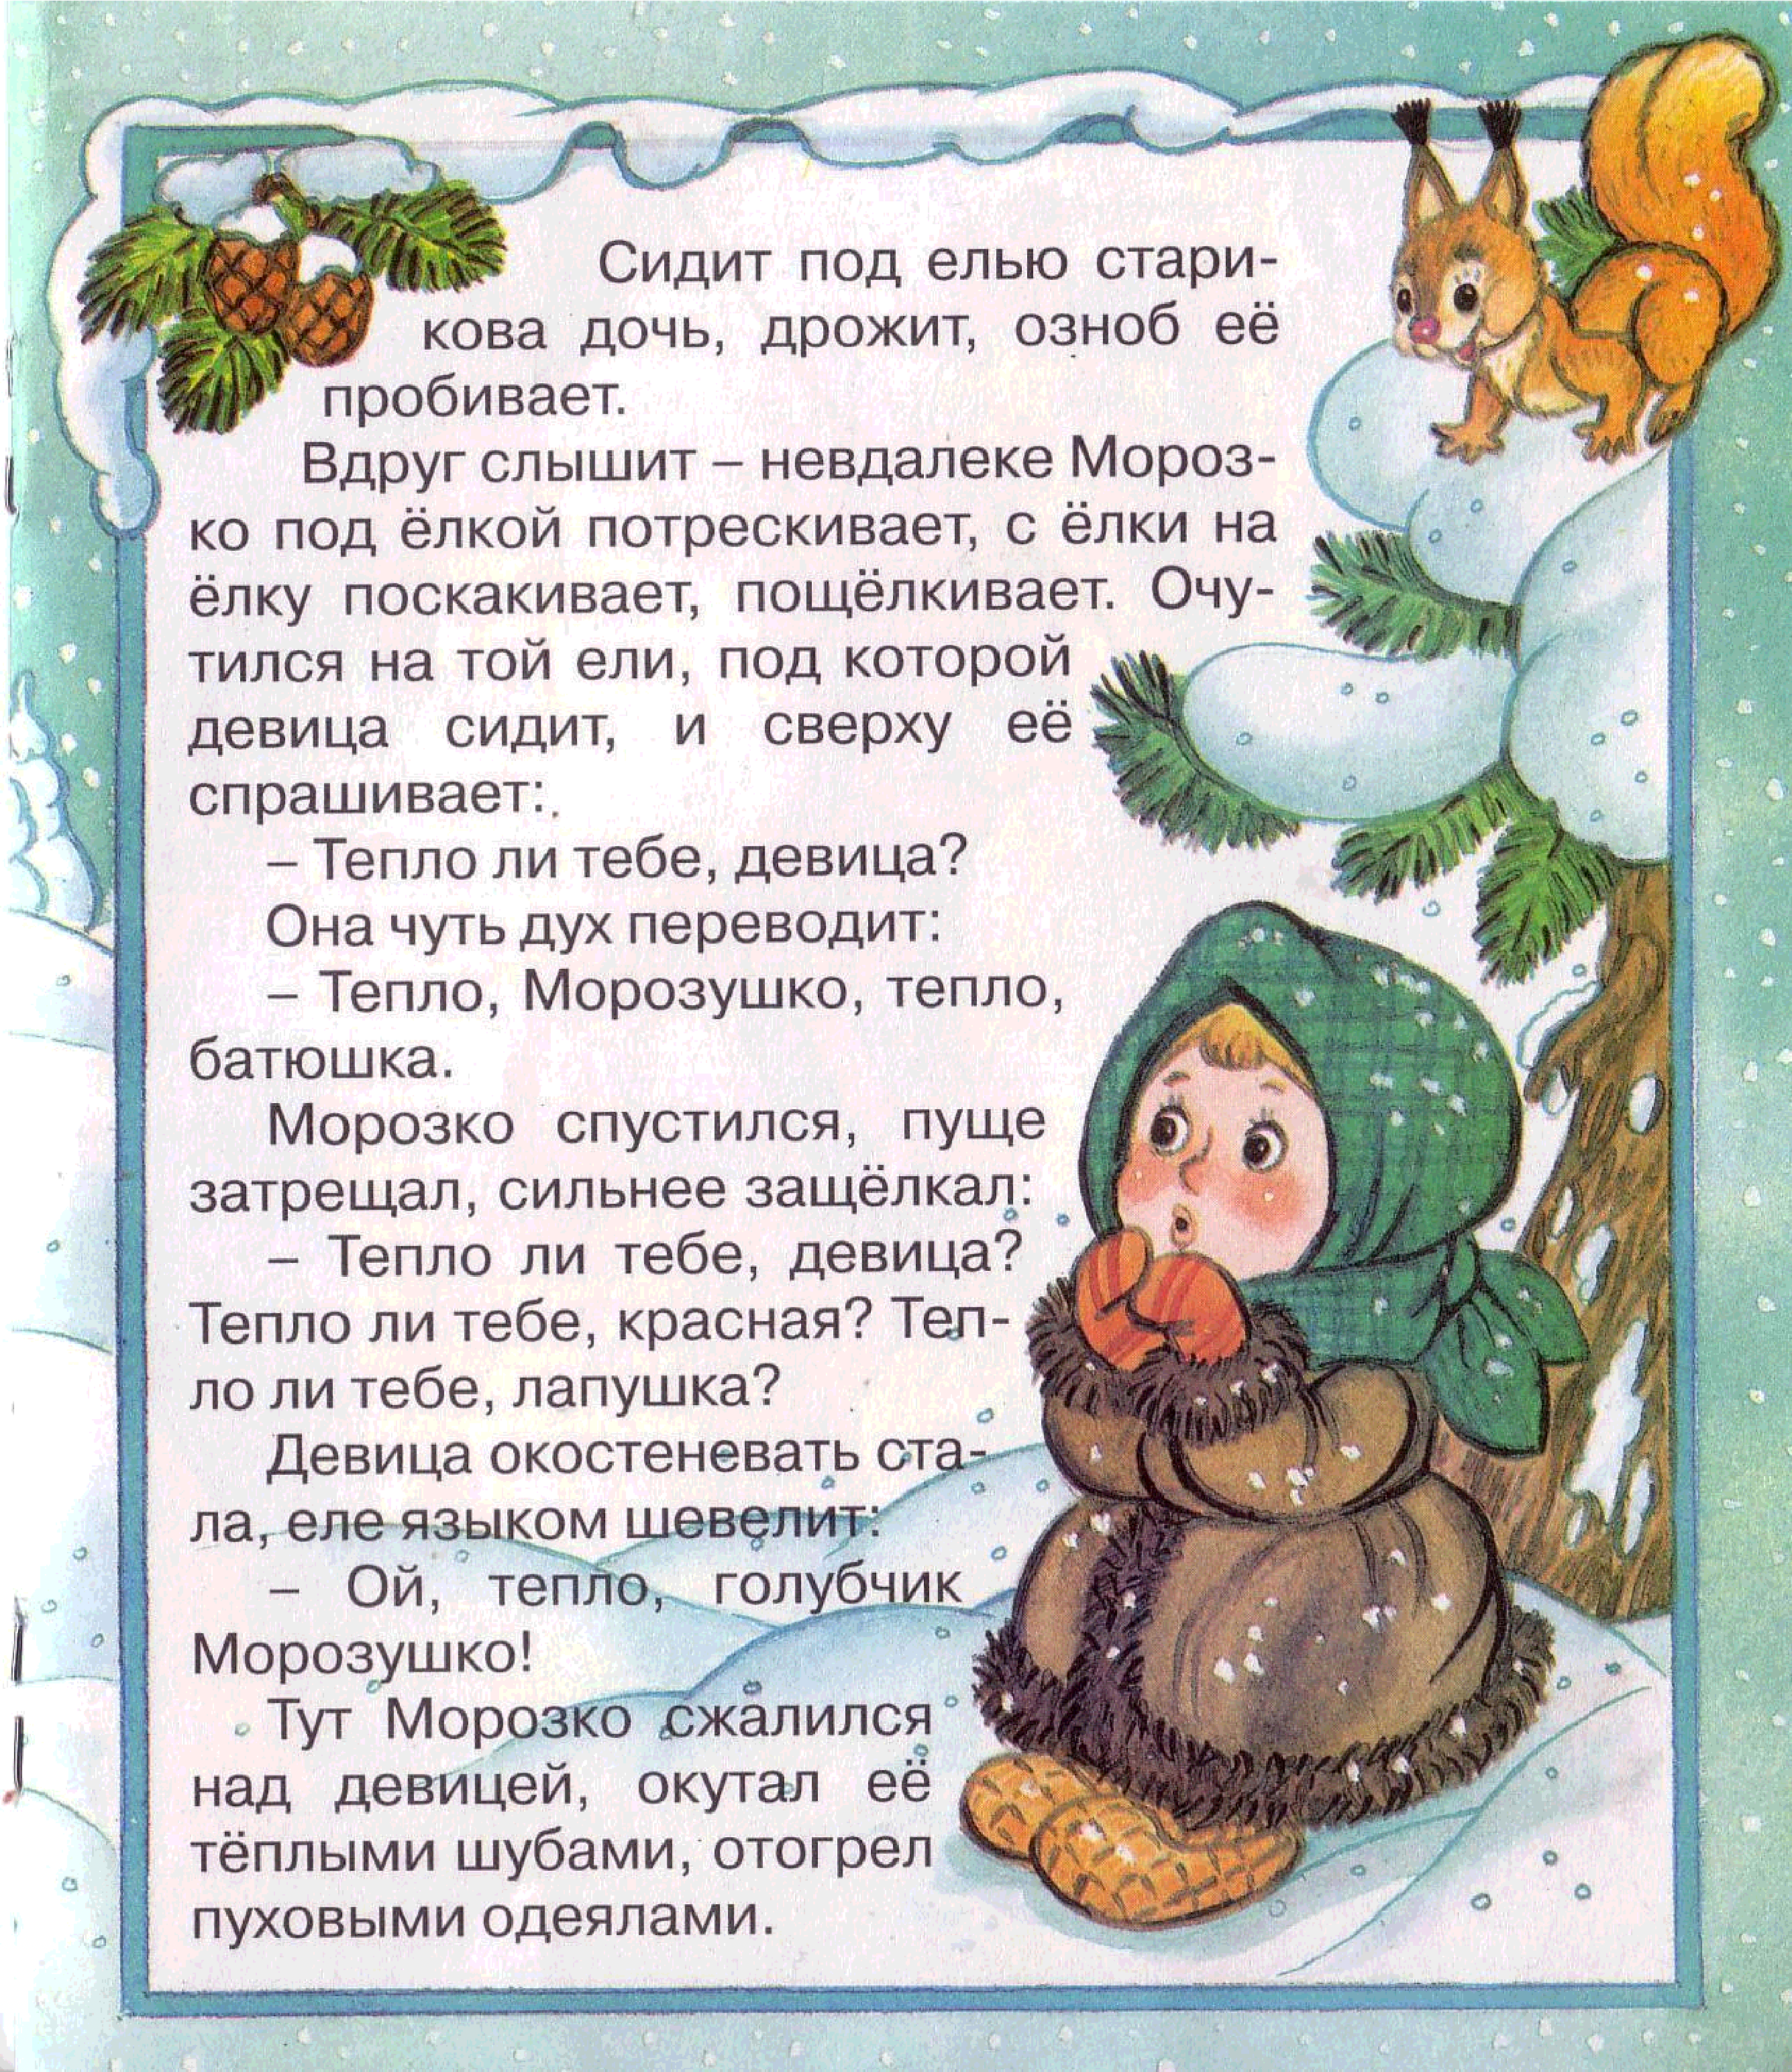 Морозко - русская народная сказка, любимая новогодняя история для детей Читать сказку Морозко онлайн бесплатно